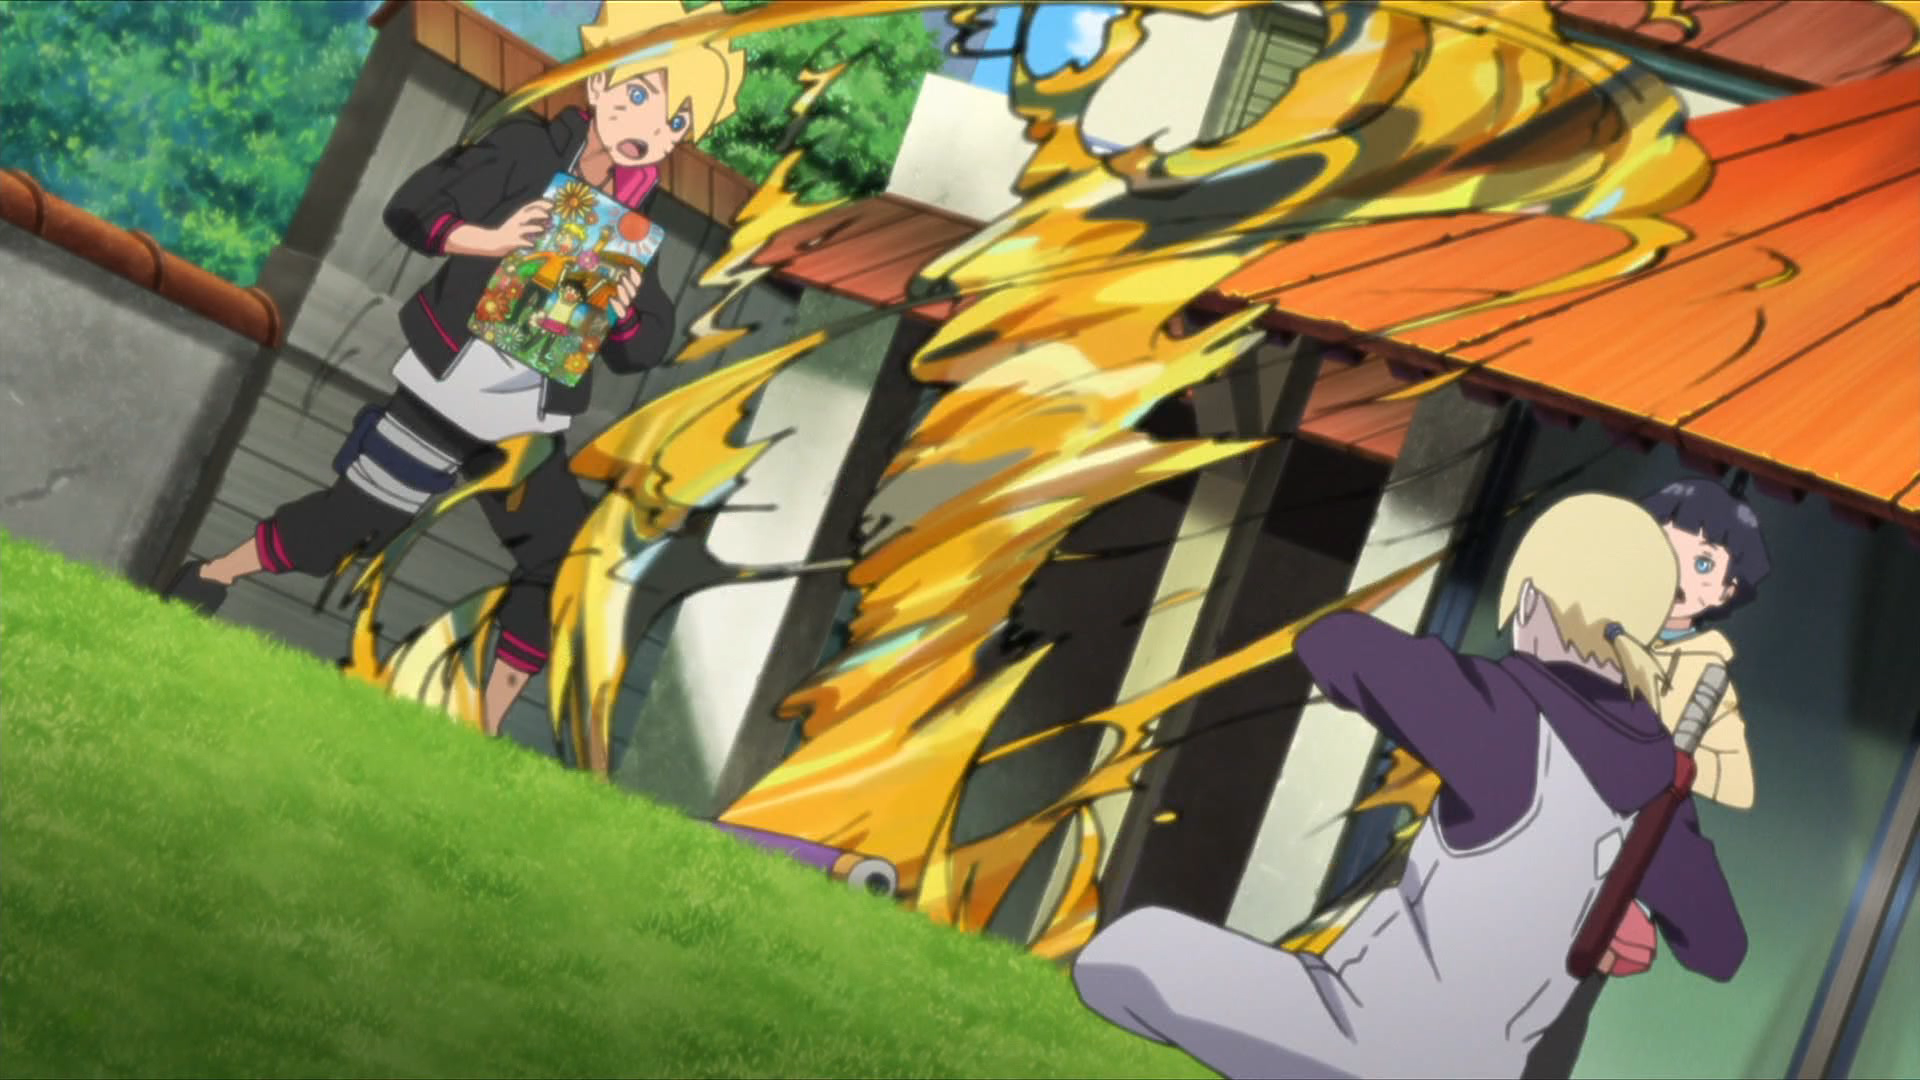 Boruto - Episódio 33: Desenho de Imitação da Super Besta Falha!!, Wiki  Naruto